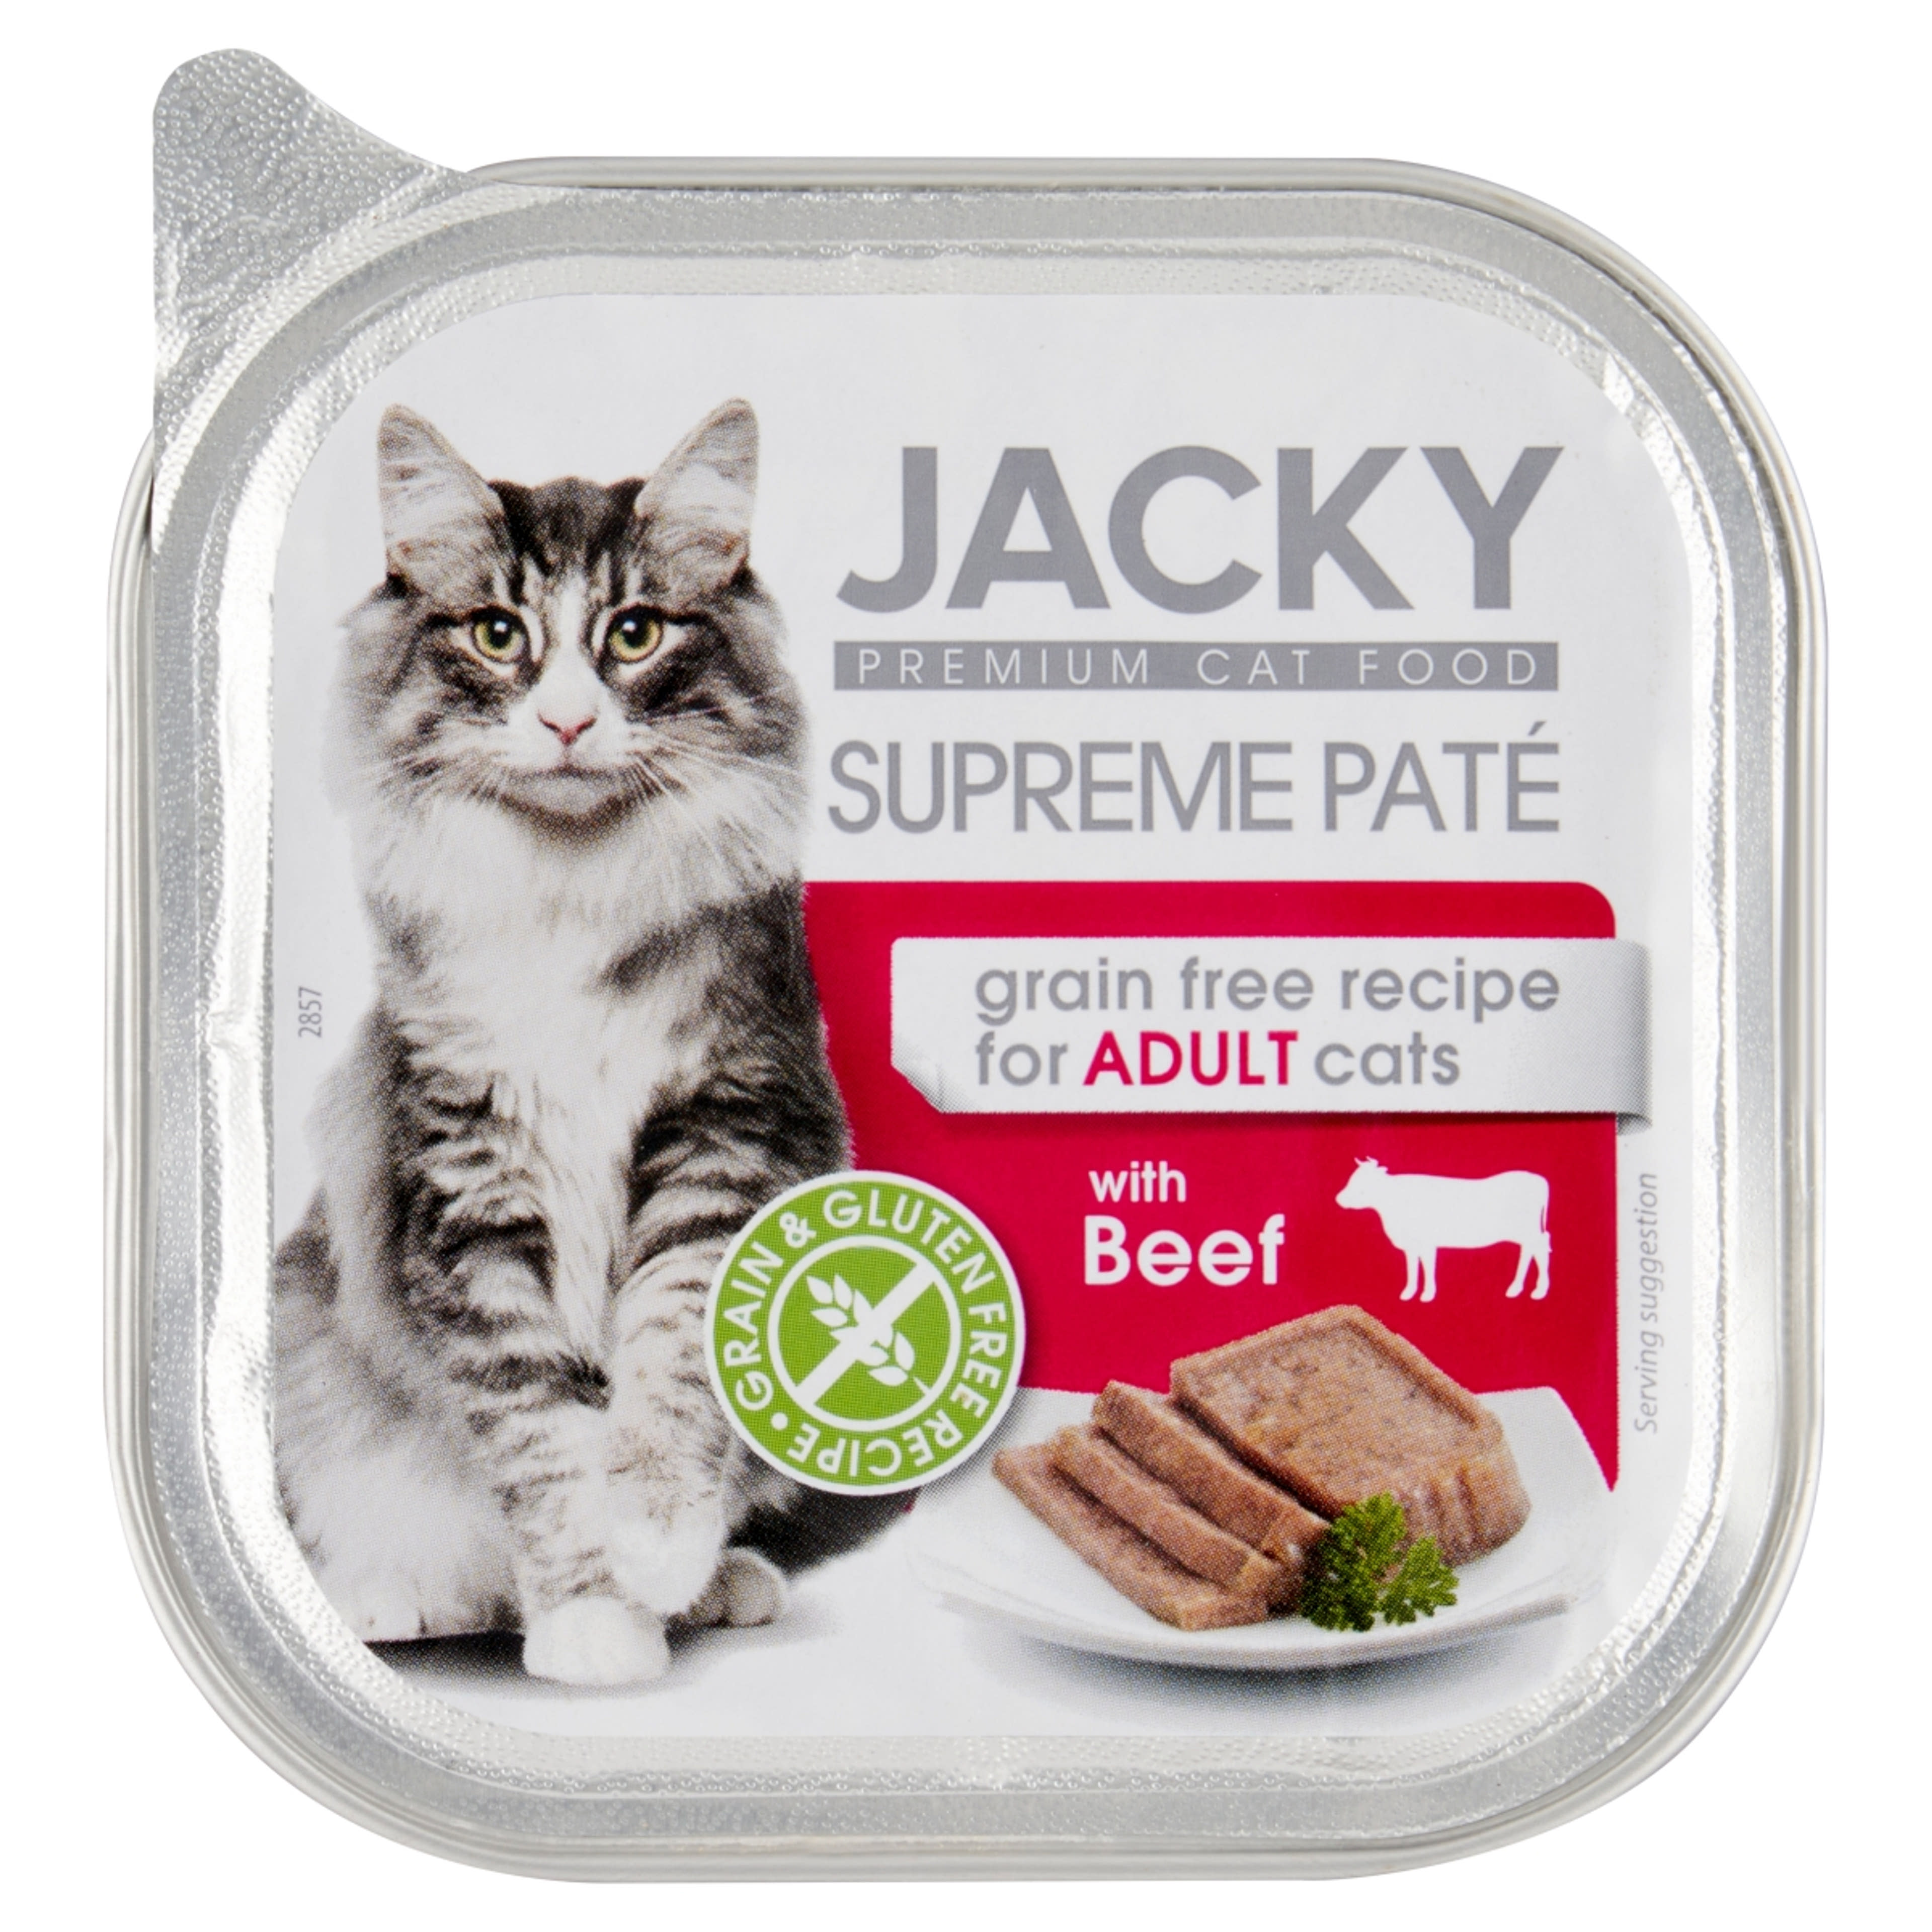 Jacky Supreme akutál pástétom marha ízesítéssel macskák számára - 100 g